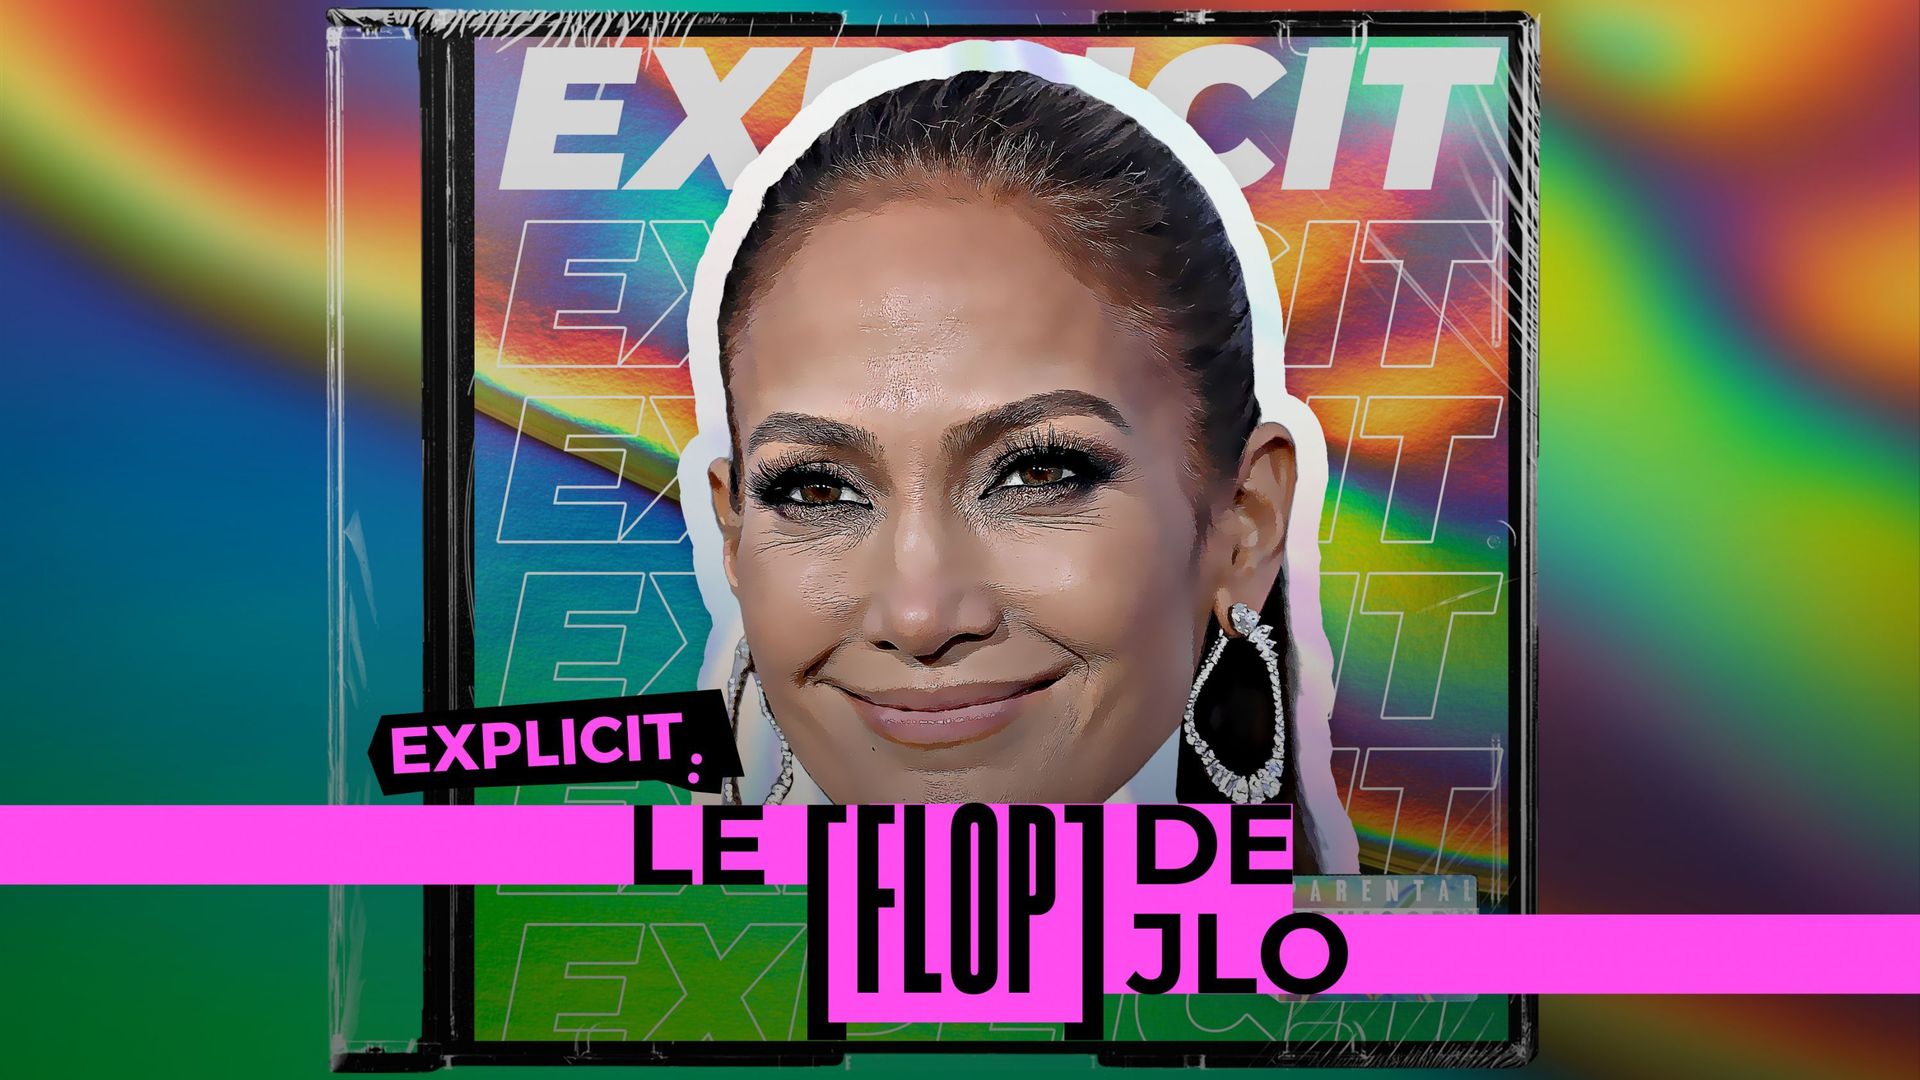 Le flop de Jennifer Lopez : comment expliquer un tel manque d’intérêt pour son retour musical ?